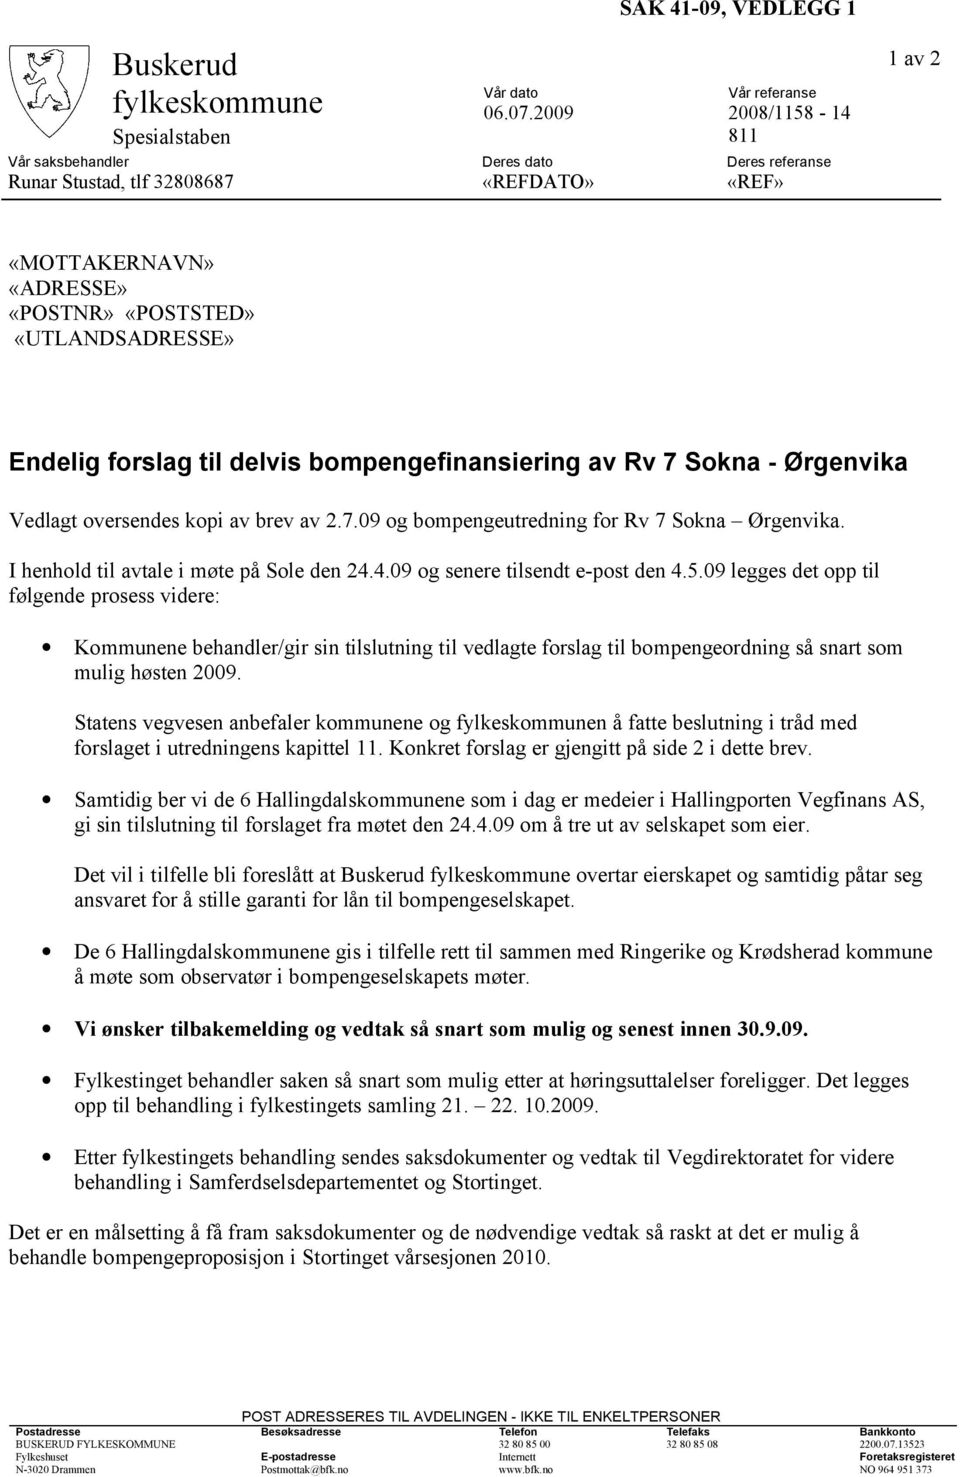 Endelig forslag til delvis bompengefinansiering av Rv 7 Sokna - Ørgenvika Vedlagt oversendes kopi av brev av 2.7.09 og bompengeutredning for Rv 7 Sokna Ørgenvika.